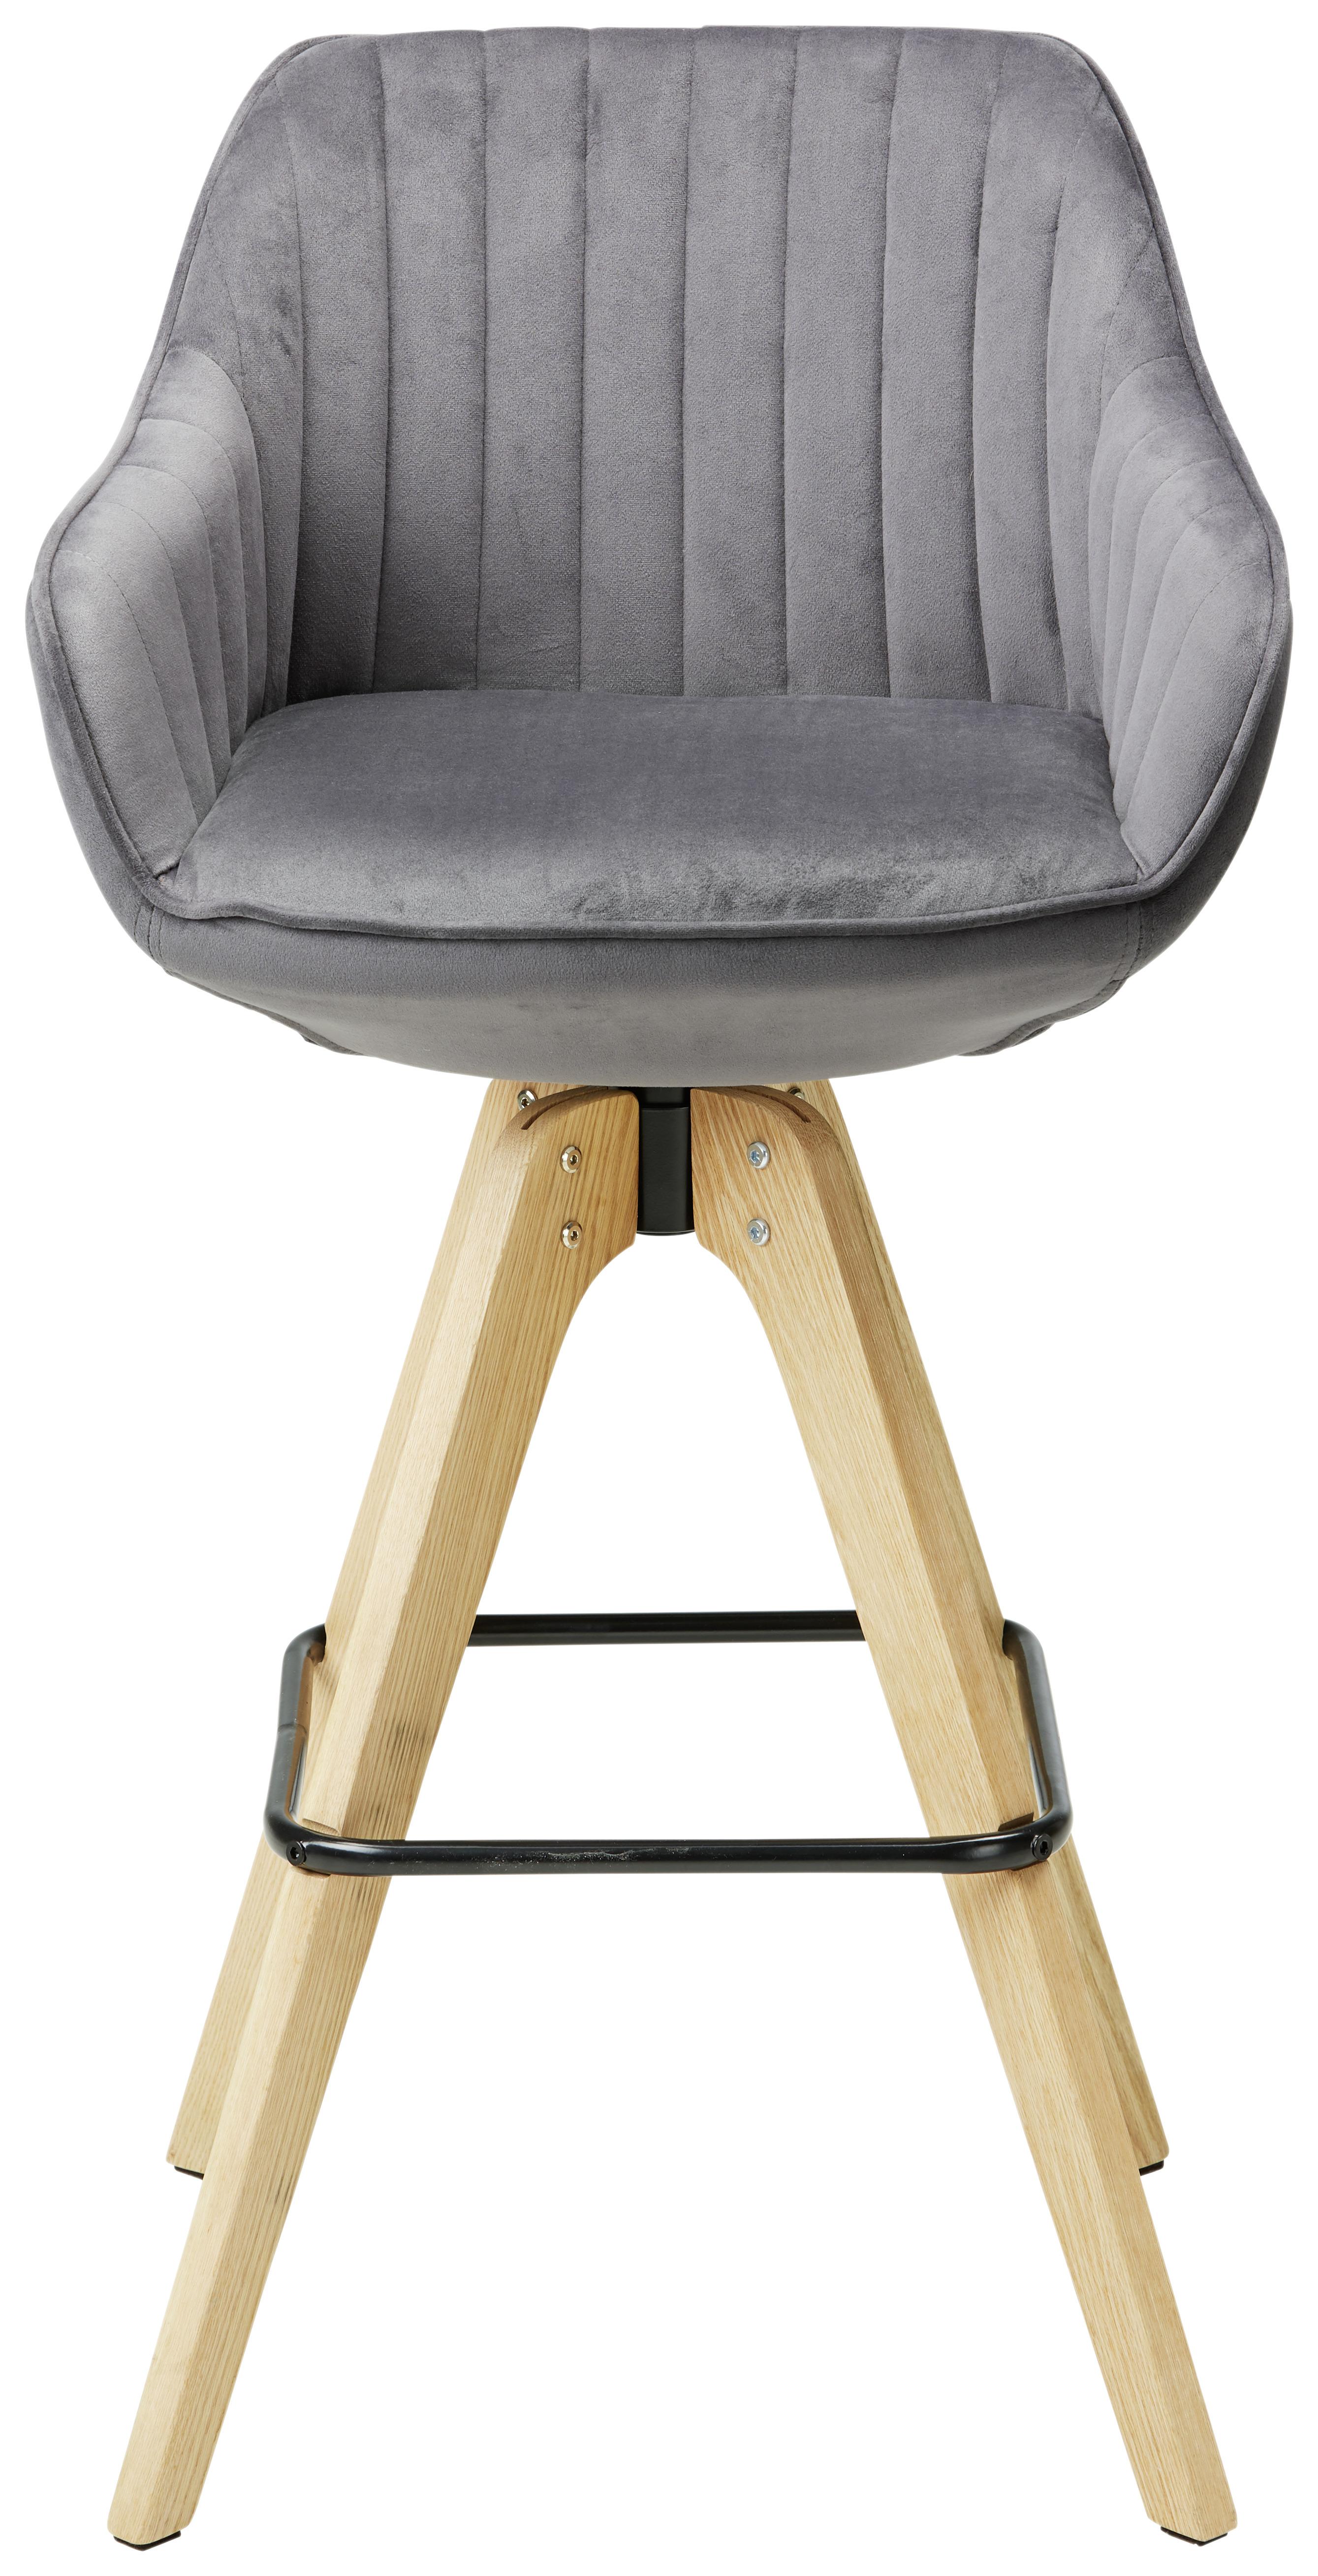 Barová Židle Chill - tmavě šedá/přírodní barvy, Moderní, dřevo/textil (55/106/78/56cm) - Premium Living